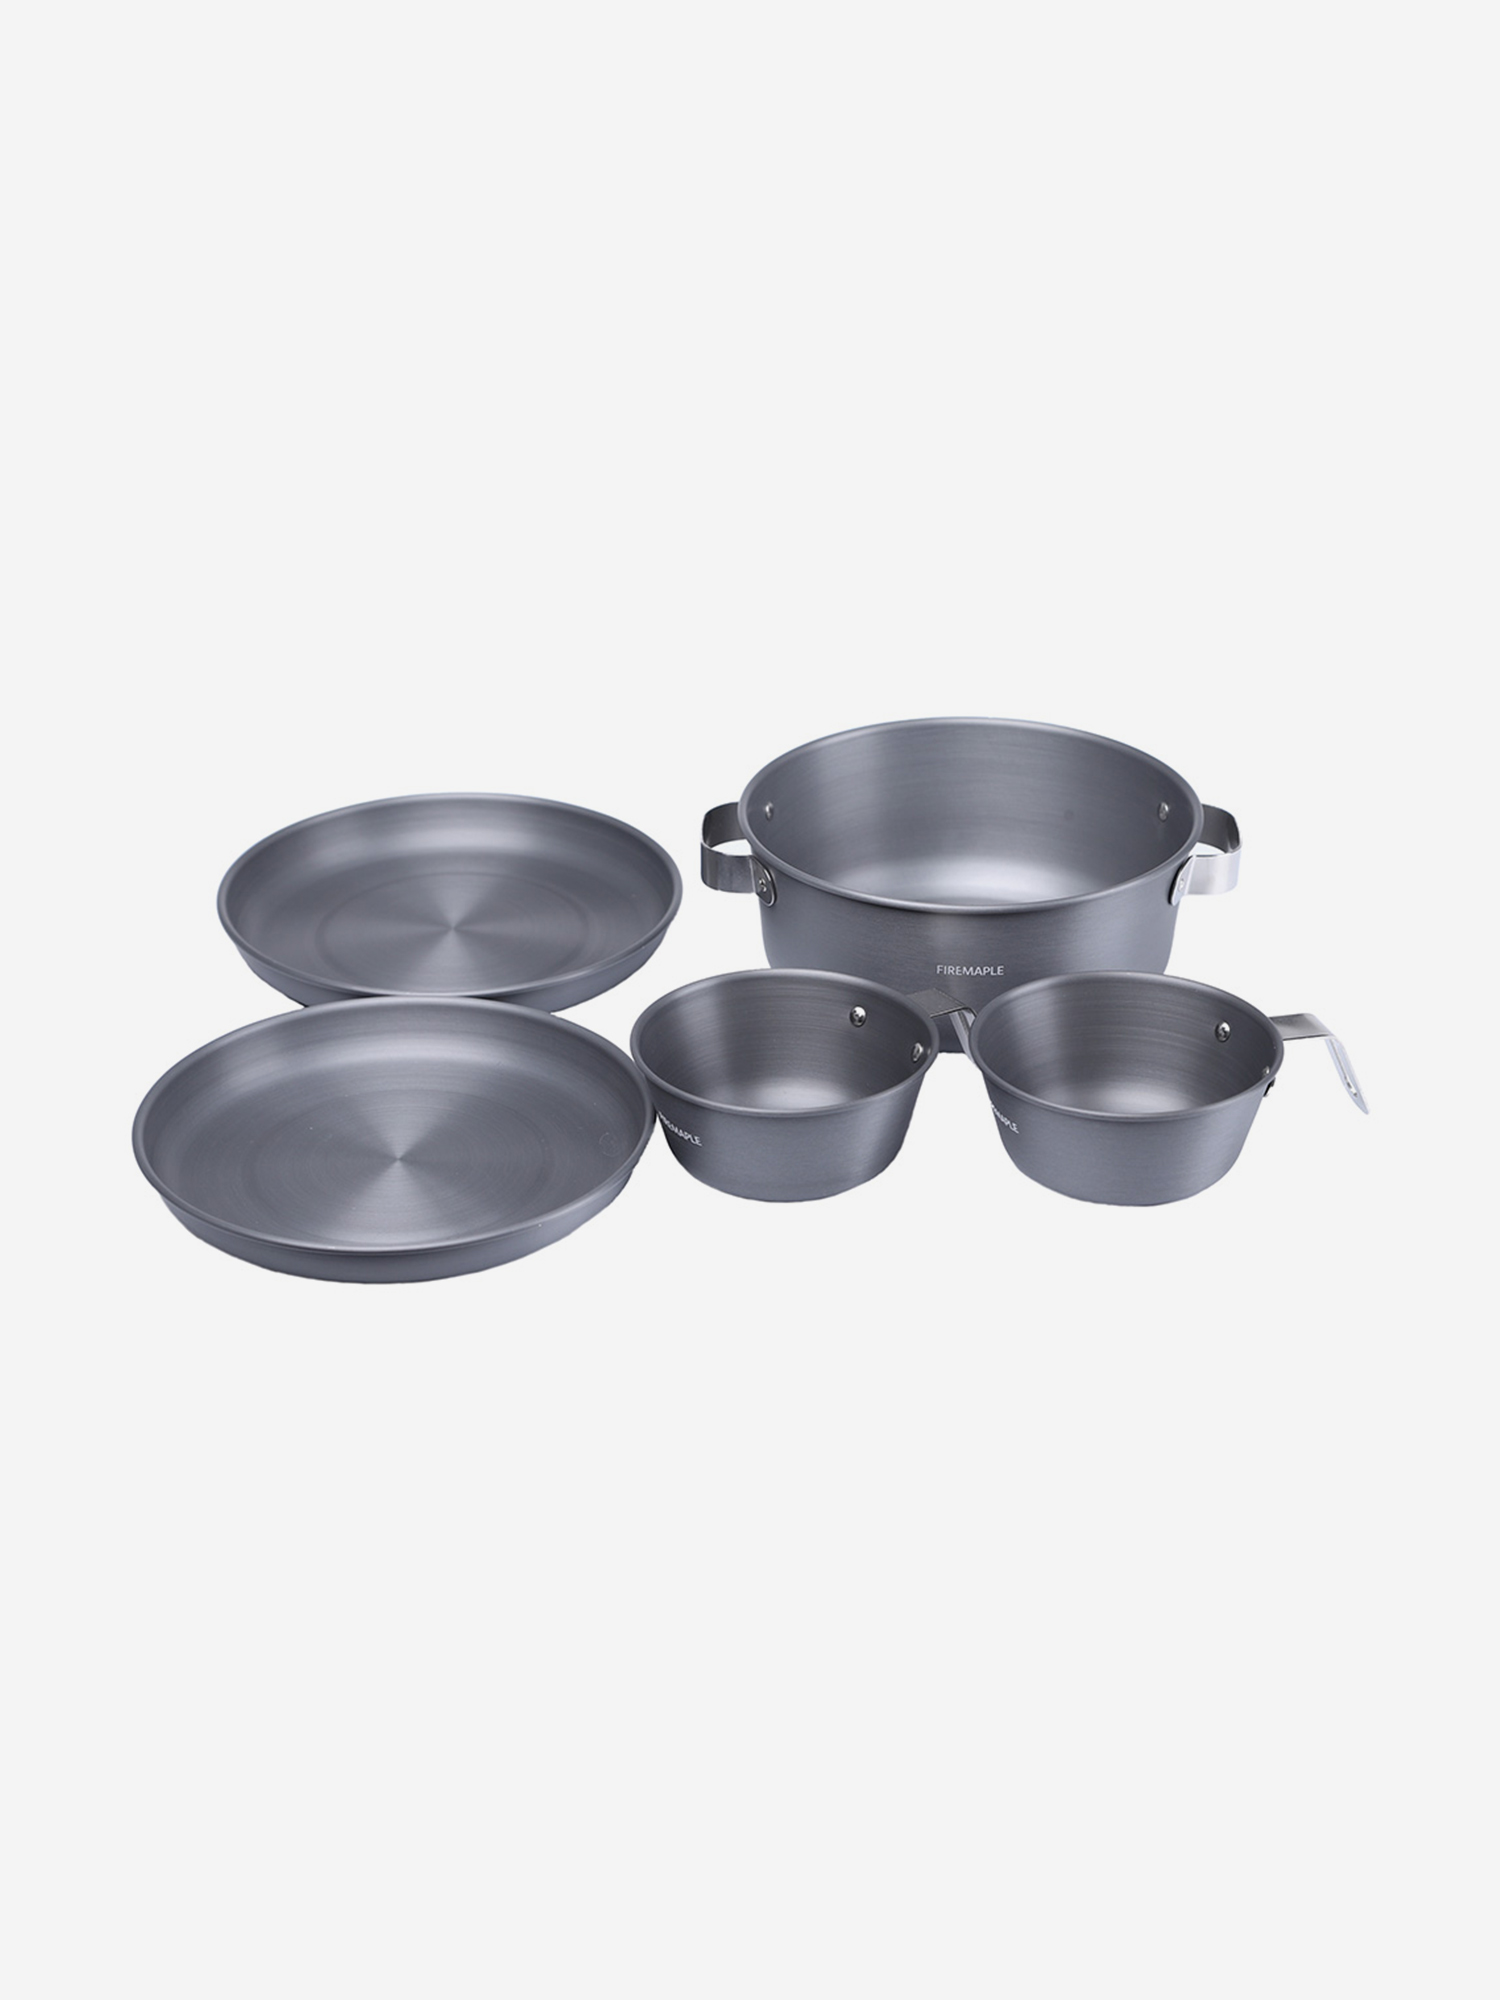 Набор посуды Fire-Maple Gourmet Set, Серый набор посуды fire maple gourmet set серый